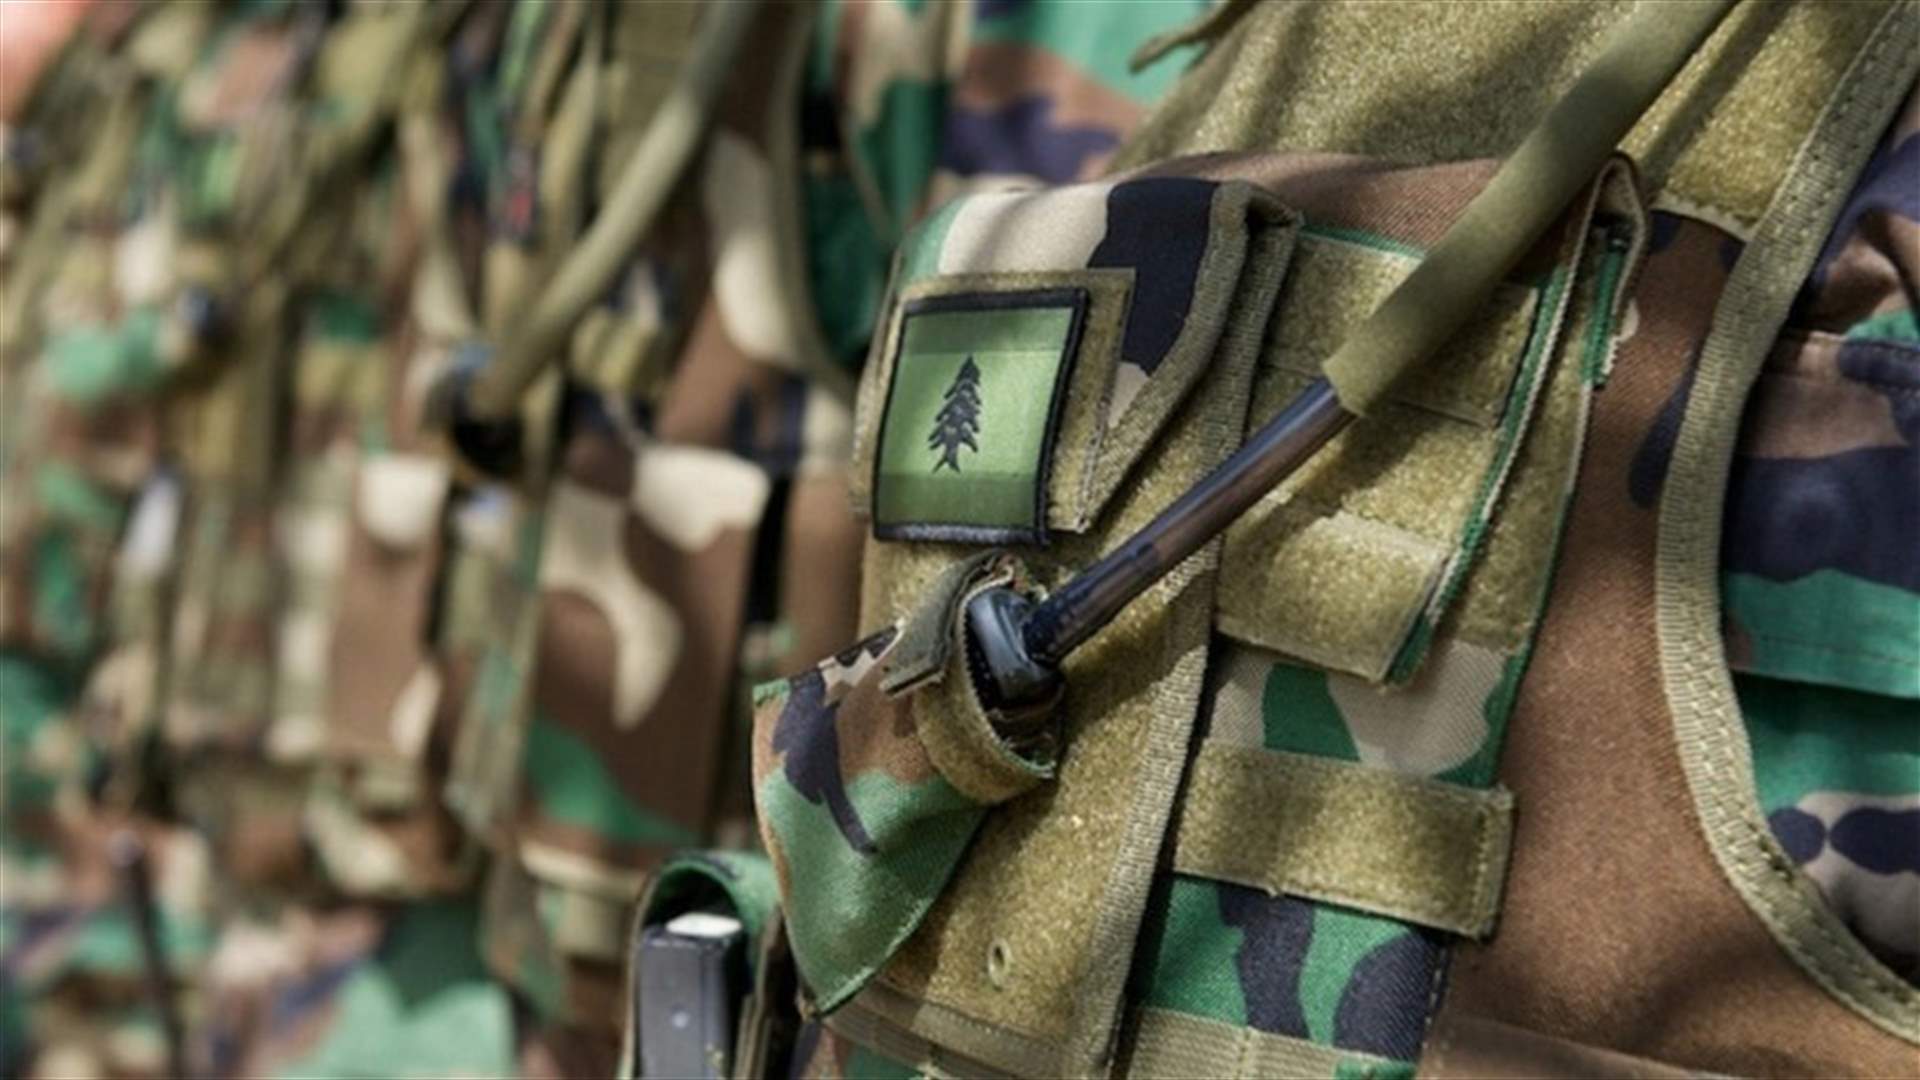 الجيش: تعرض دورية من مديرية المخابرات لإطلاق نار في بوداي وتوقيف شخصين لقيامهما بعمليات سرقة في محلة المرفأ